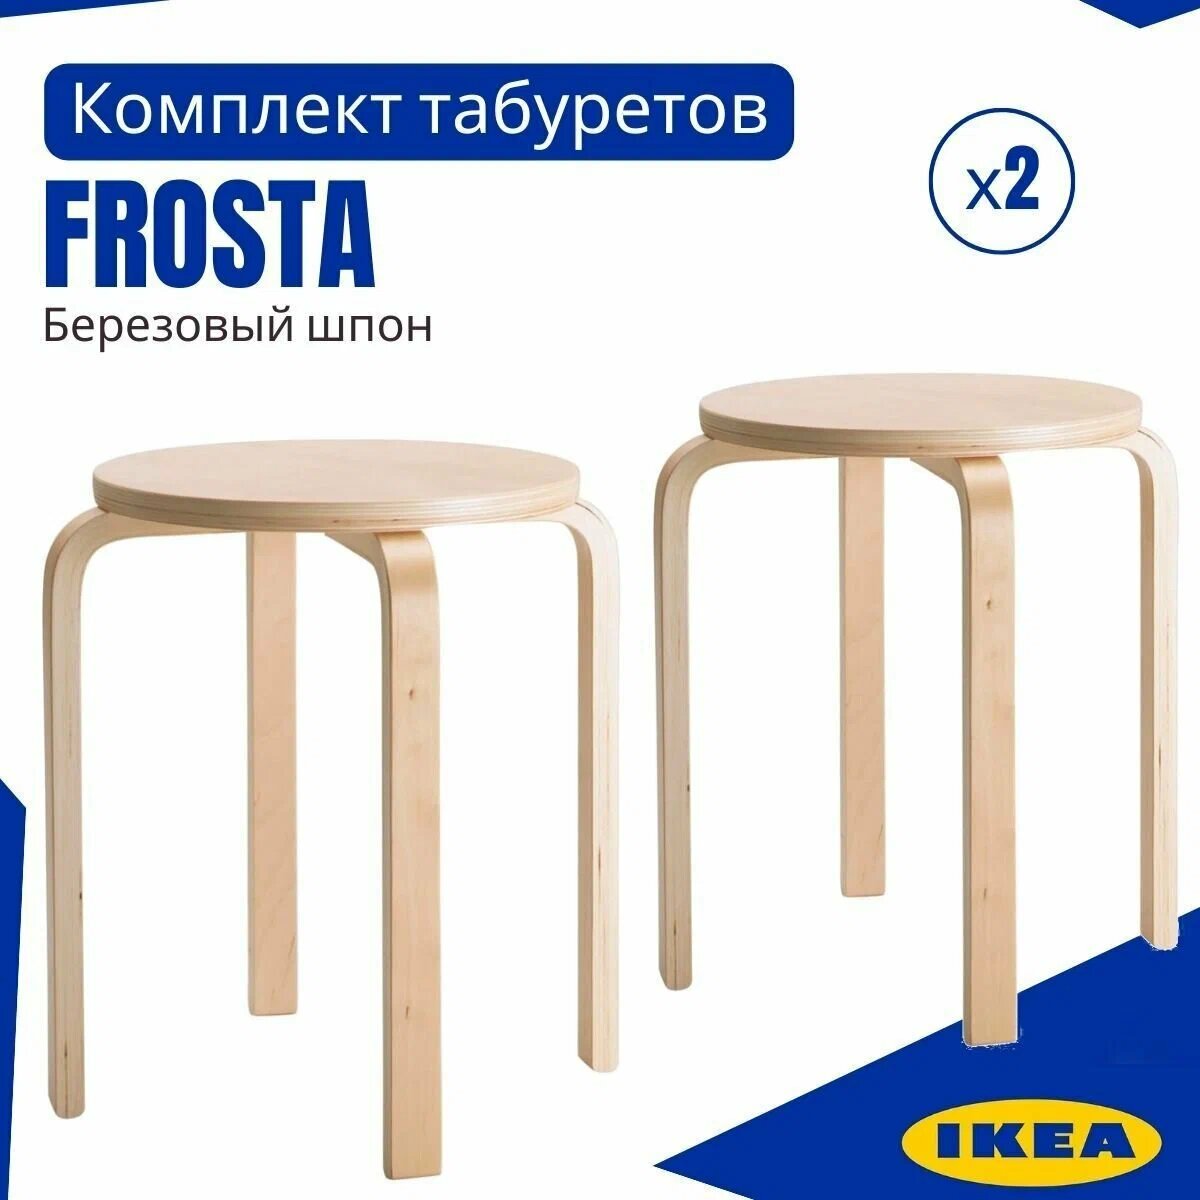 Табурет икеа фроста аналог (IKEA FROSTA) 2 шт круглый табурет для кухни комплект табуретов 30x45 деревянные без обработки